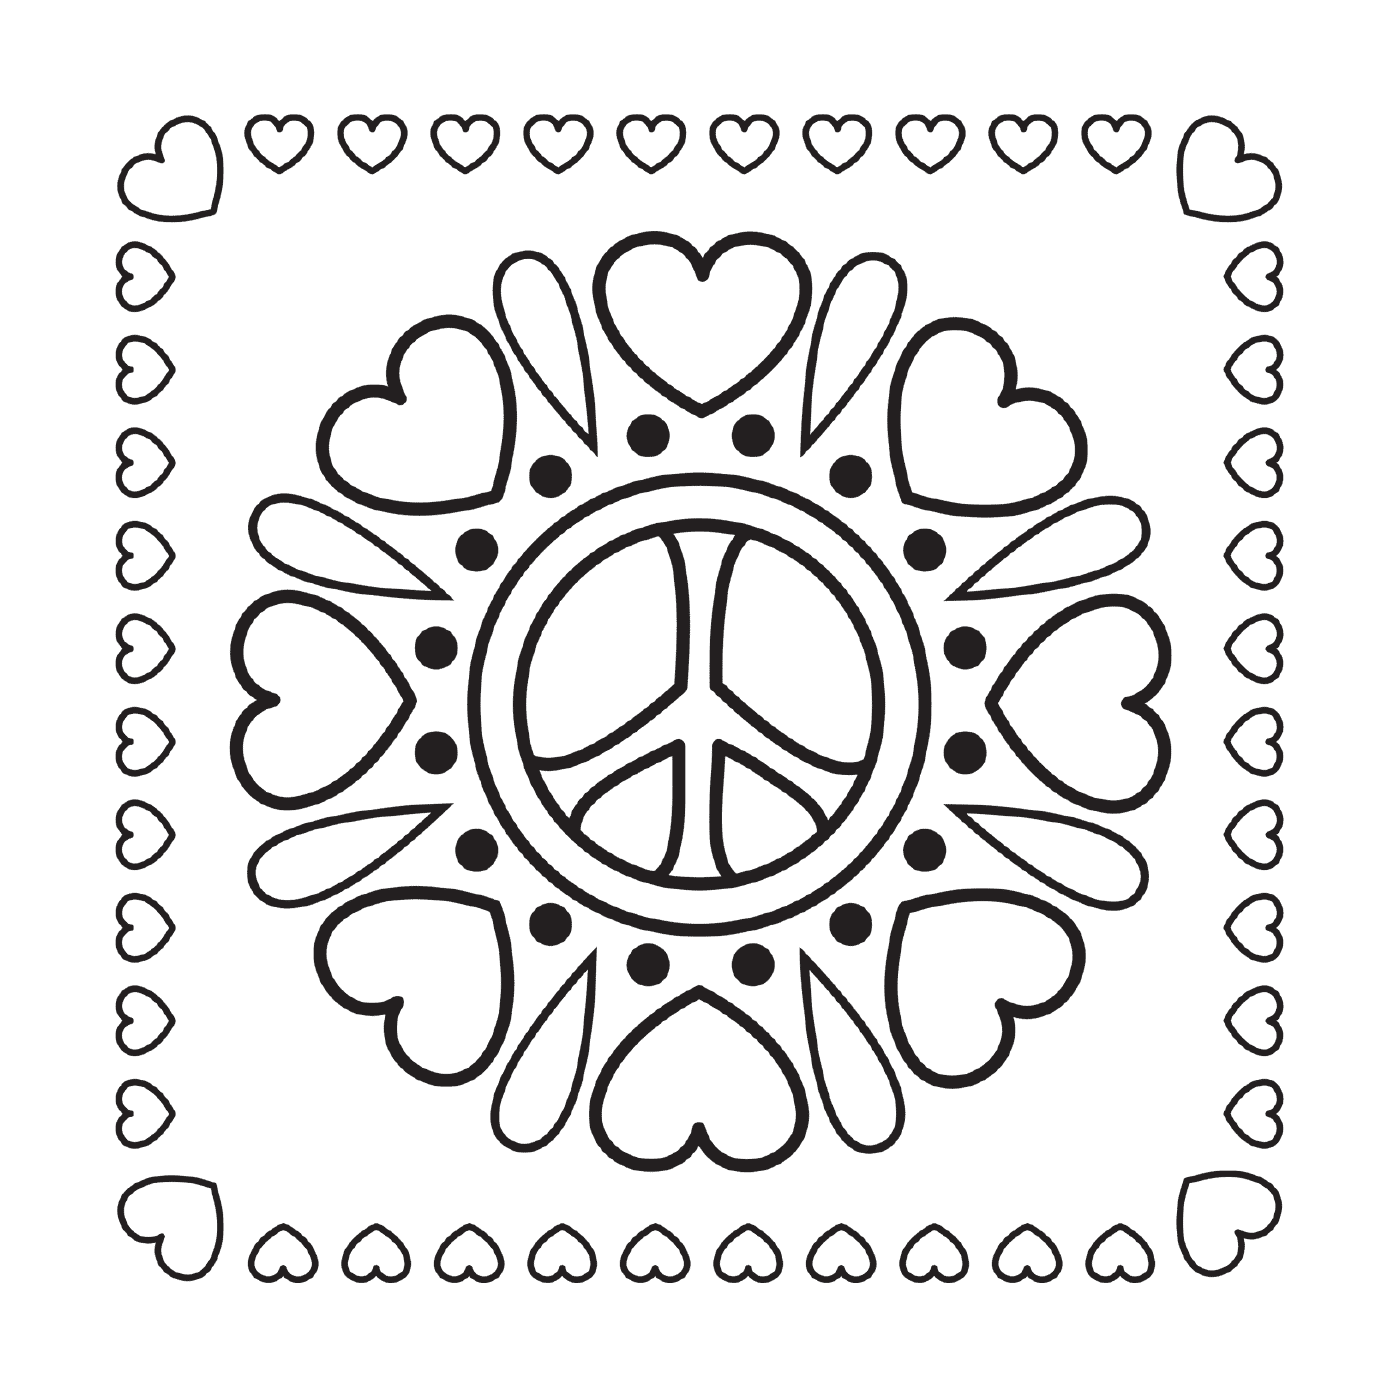  Mandala des Friedens mit den Herzen 